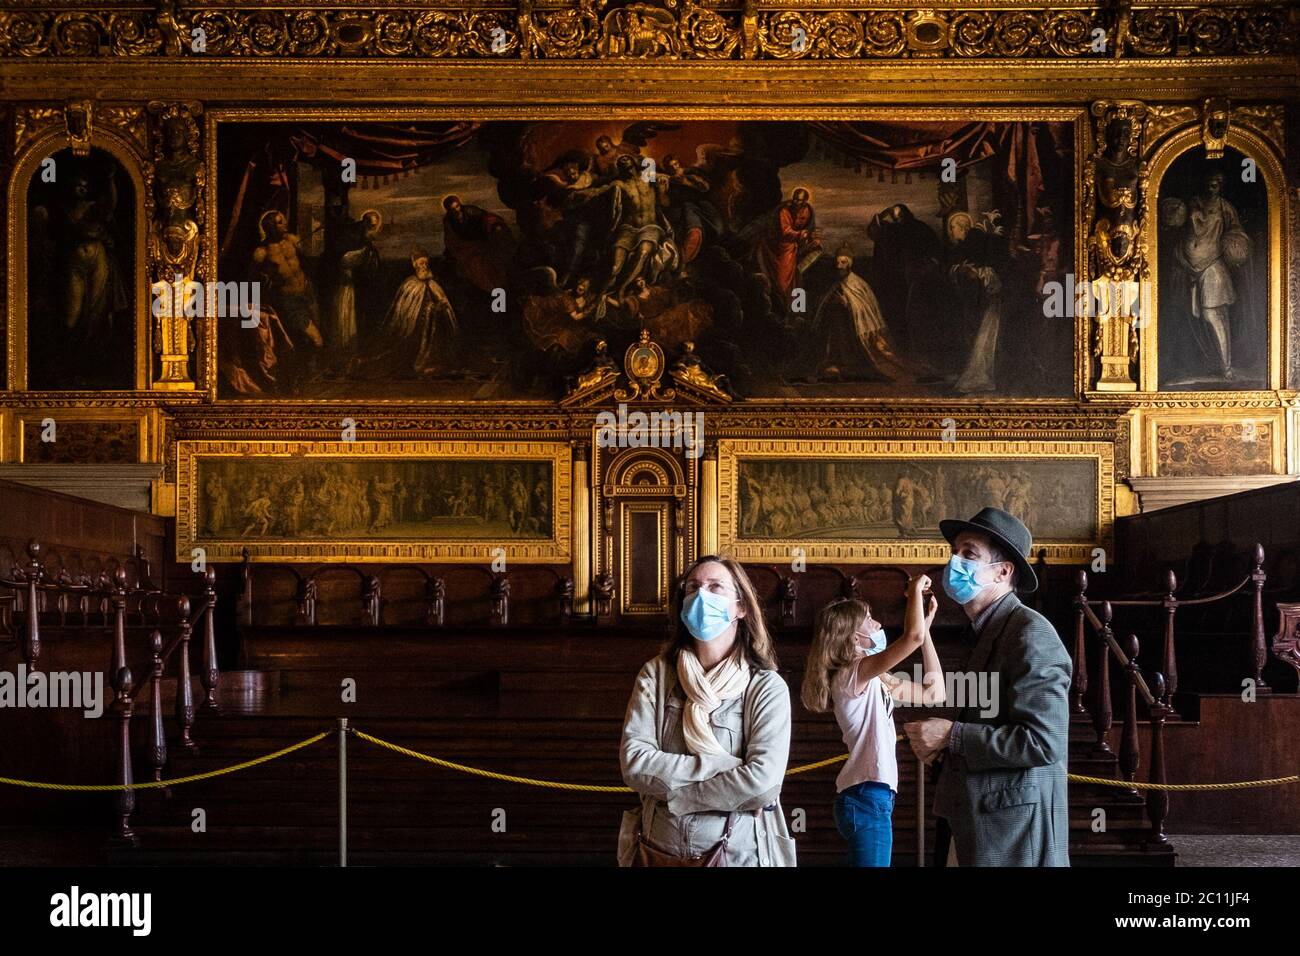 VENECIA, ITALIA - 13 DE JUNIO de 2020: Los turistas visitan el Museo del Palacio Ducal el día de la reapertura después de más de 3 meses de cierre debido a la clausura de Covid-19 el 13 de junio de 2020 en Venecia, Italia. Crédito: Despertando/Alamy Live News Foto de stock